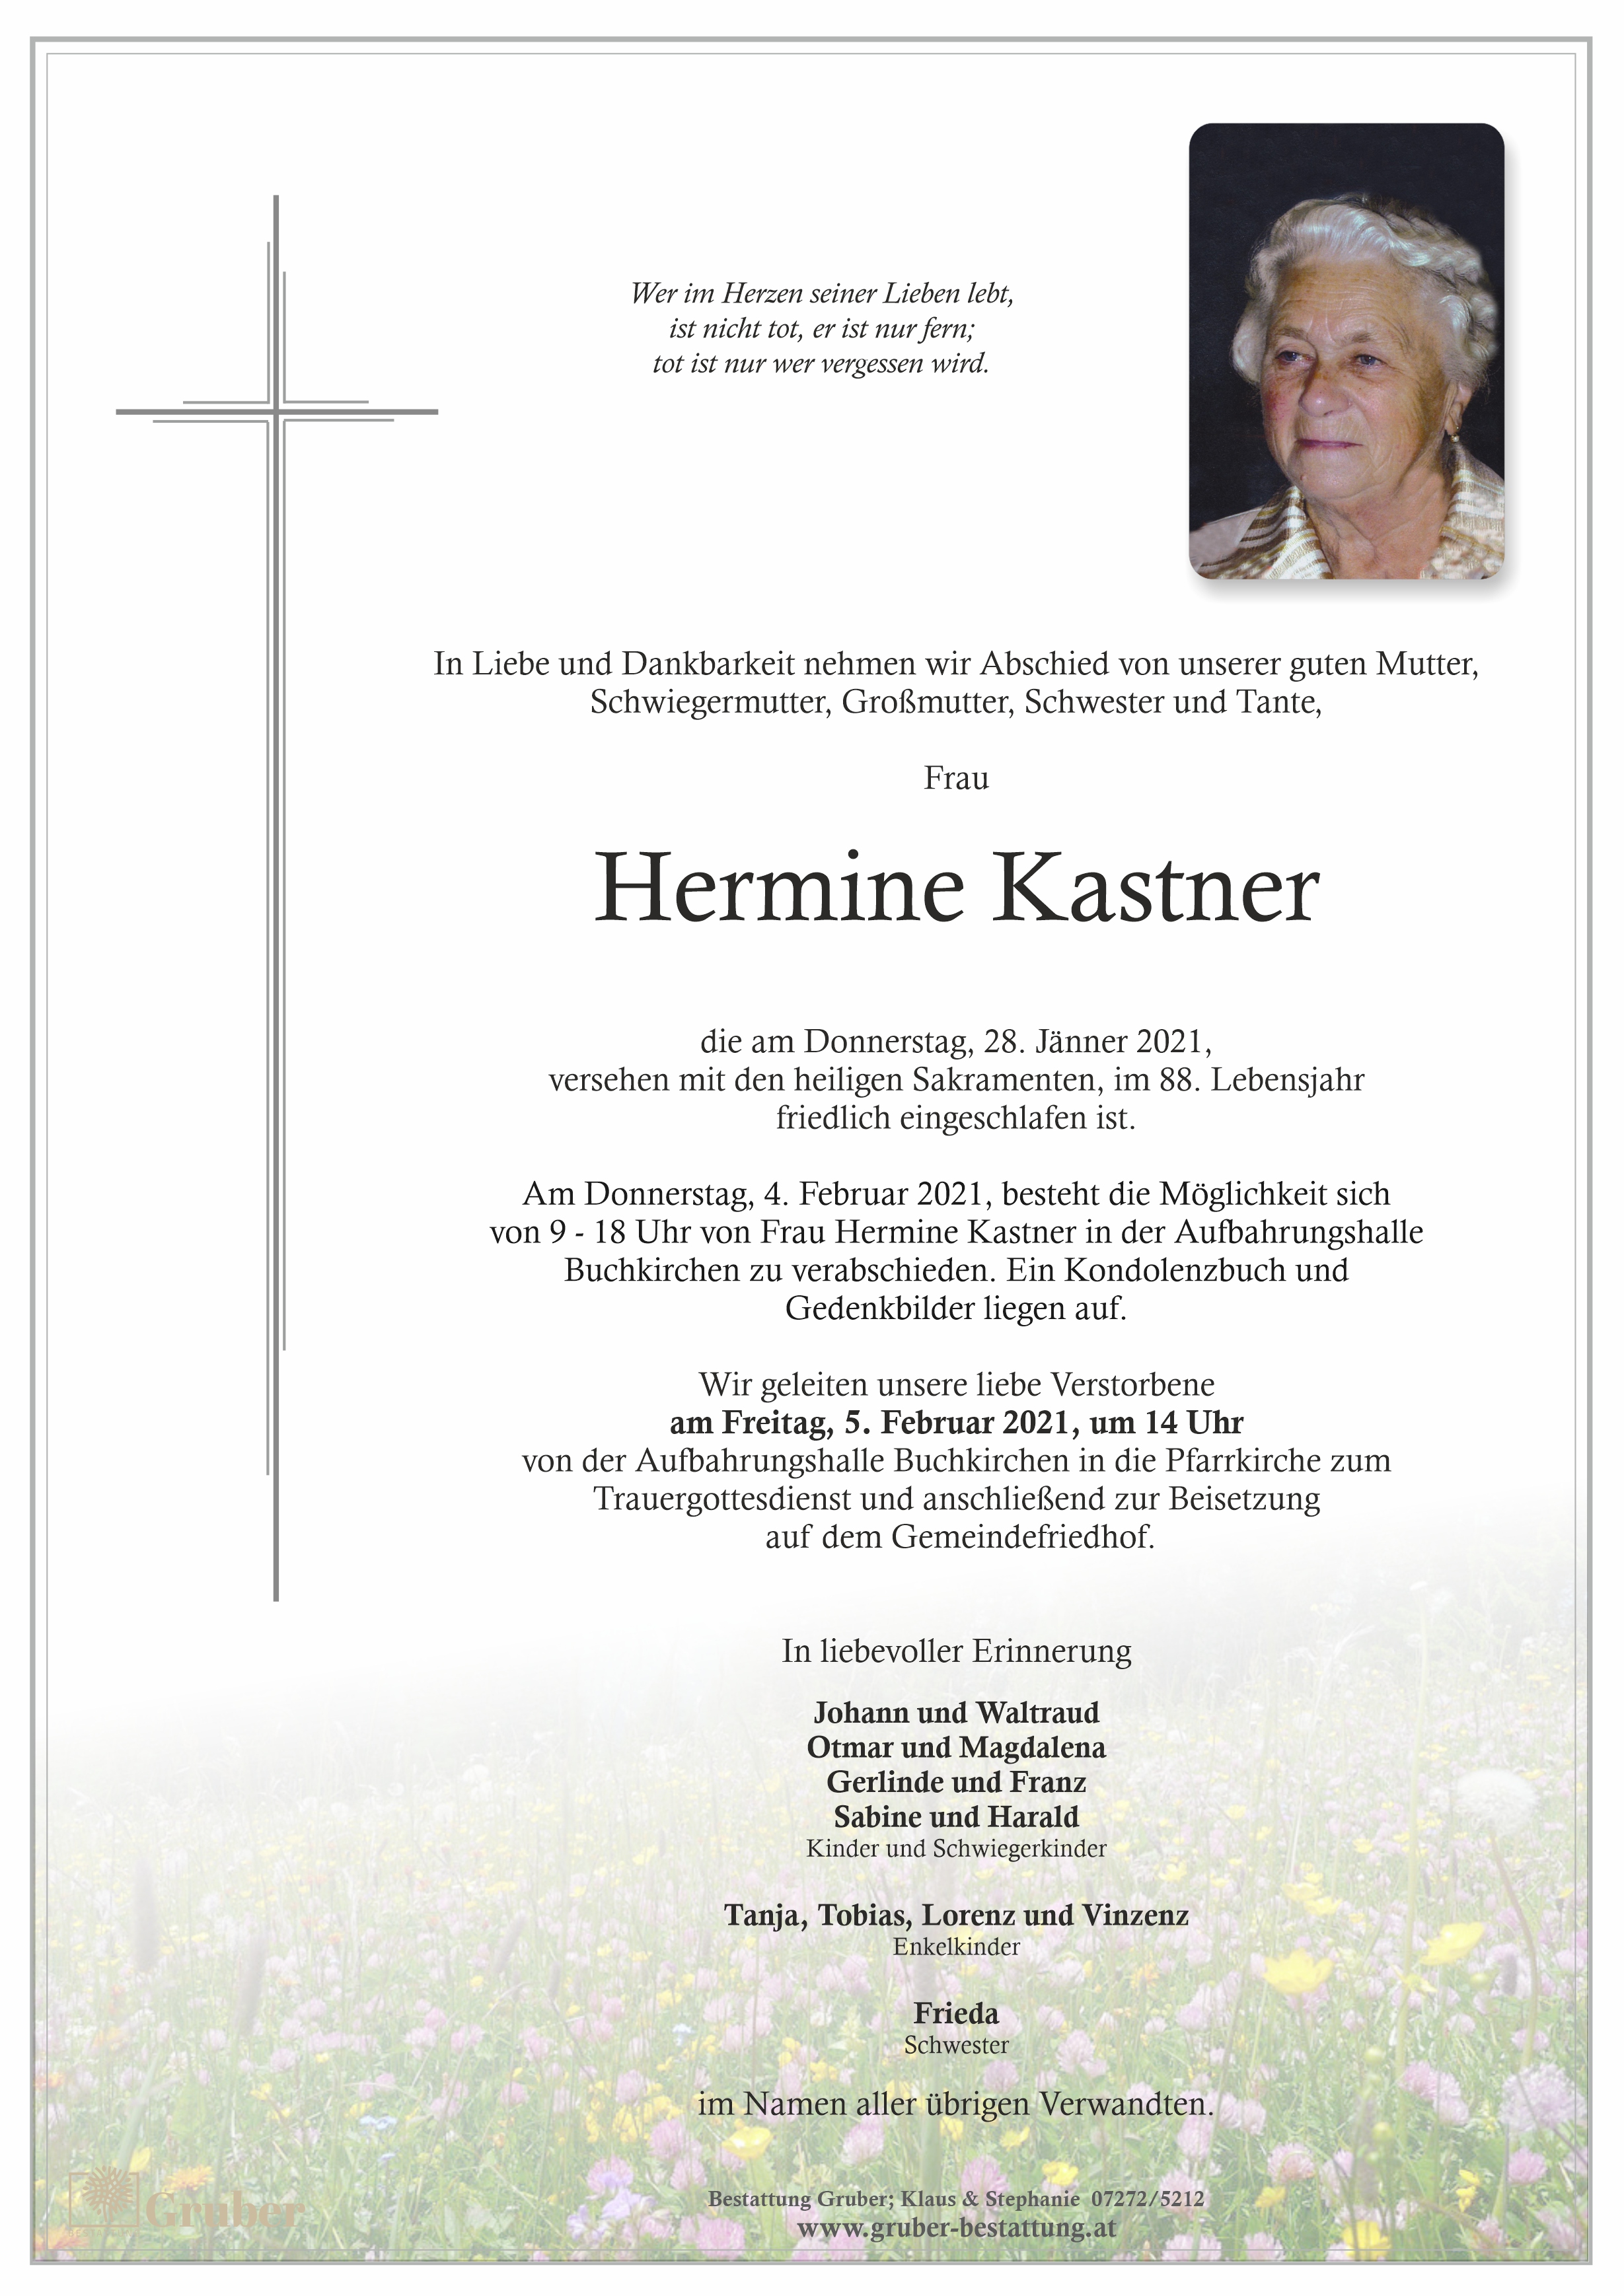 Hermine Kastner (Buchkirchen)